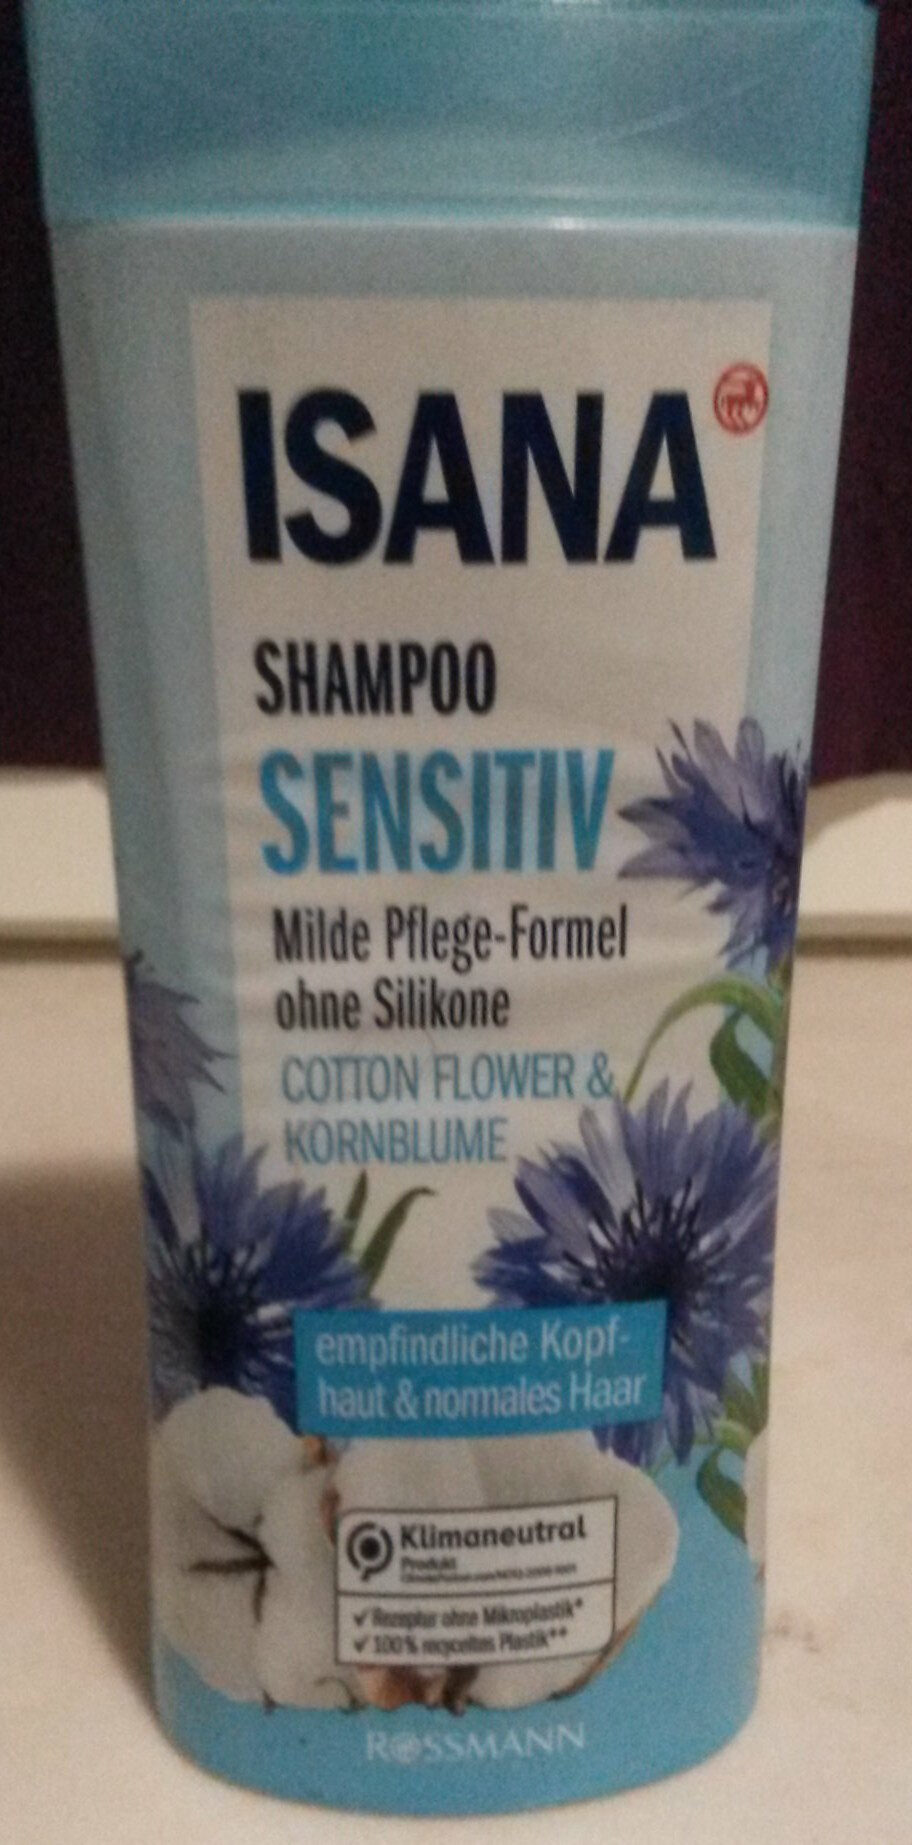 Shampoo sensitiv - Produto - de